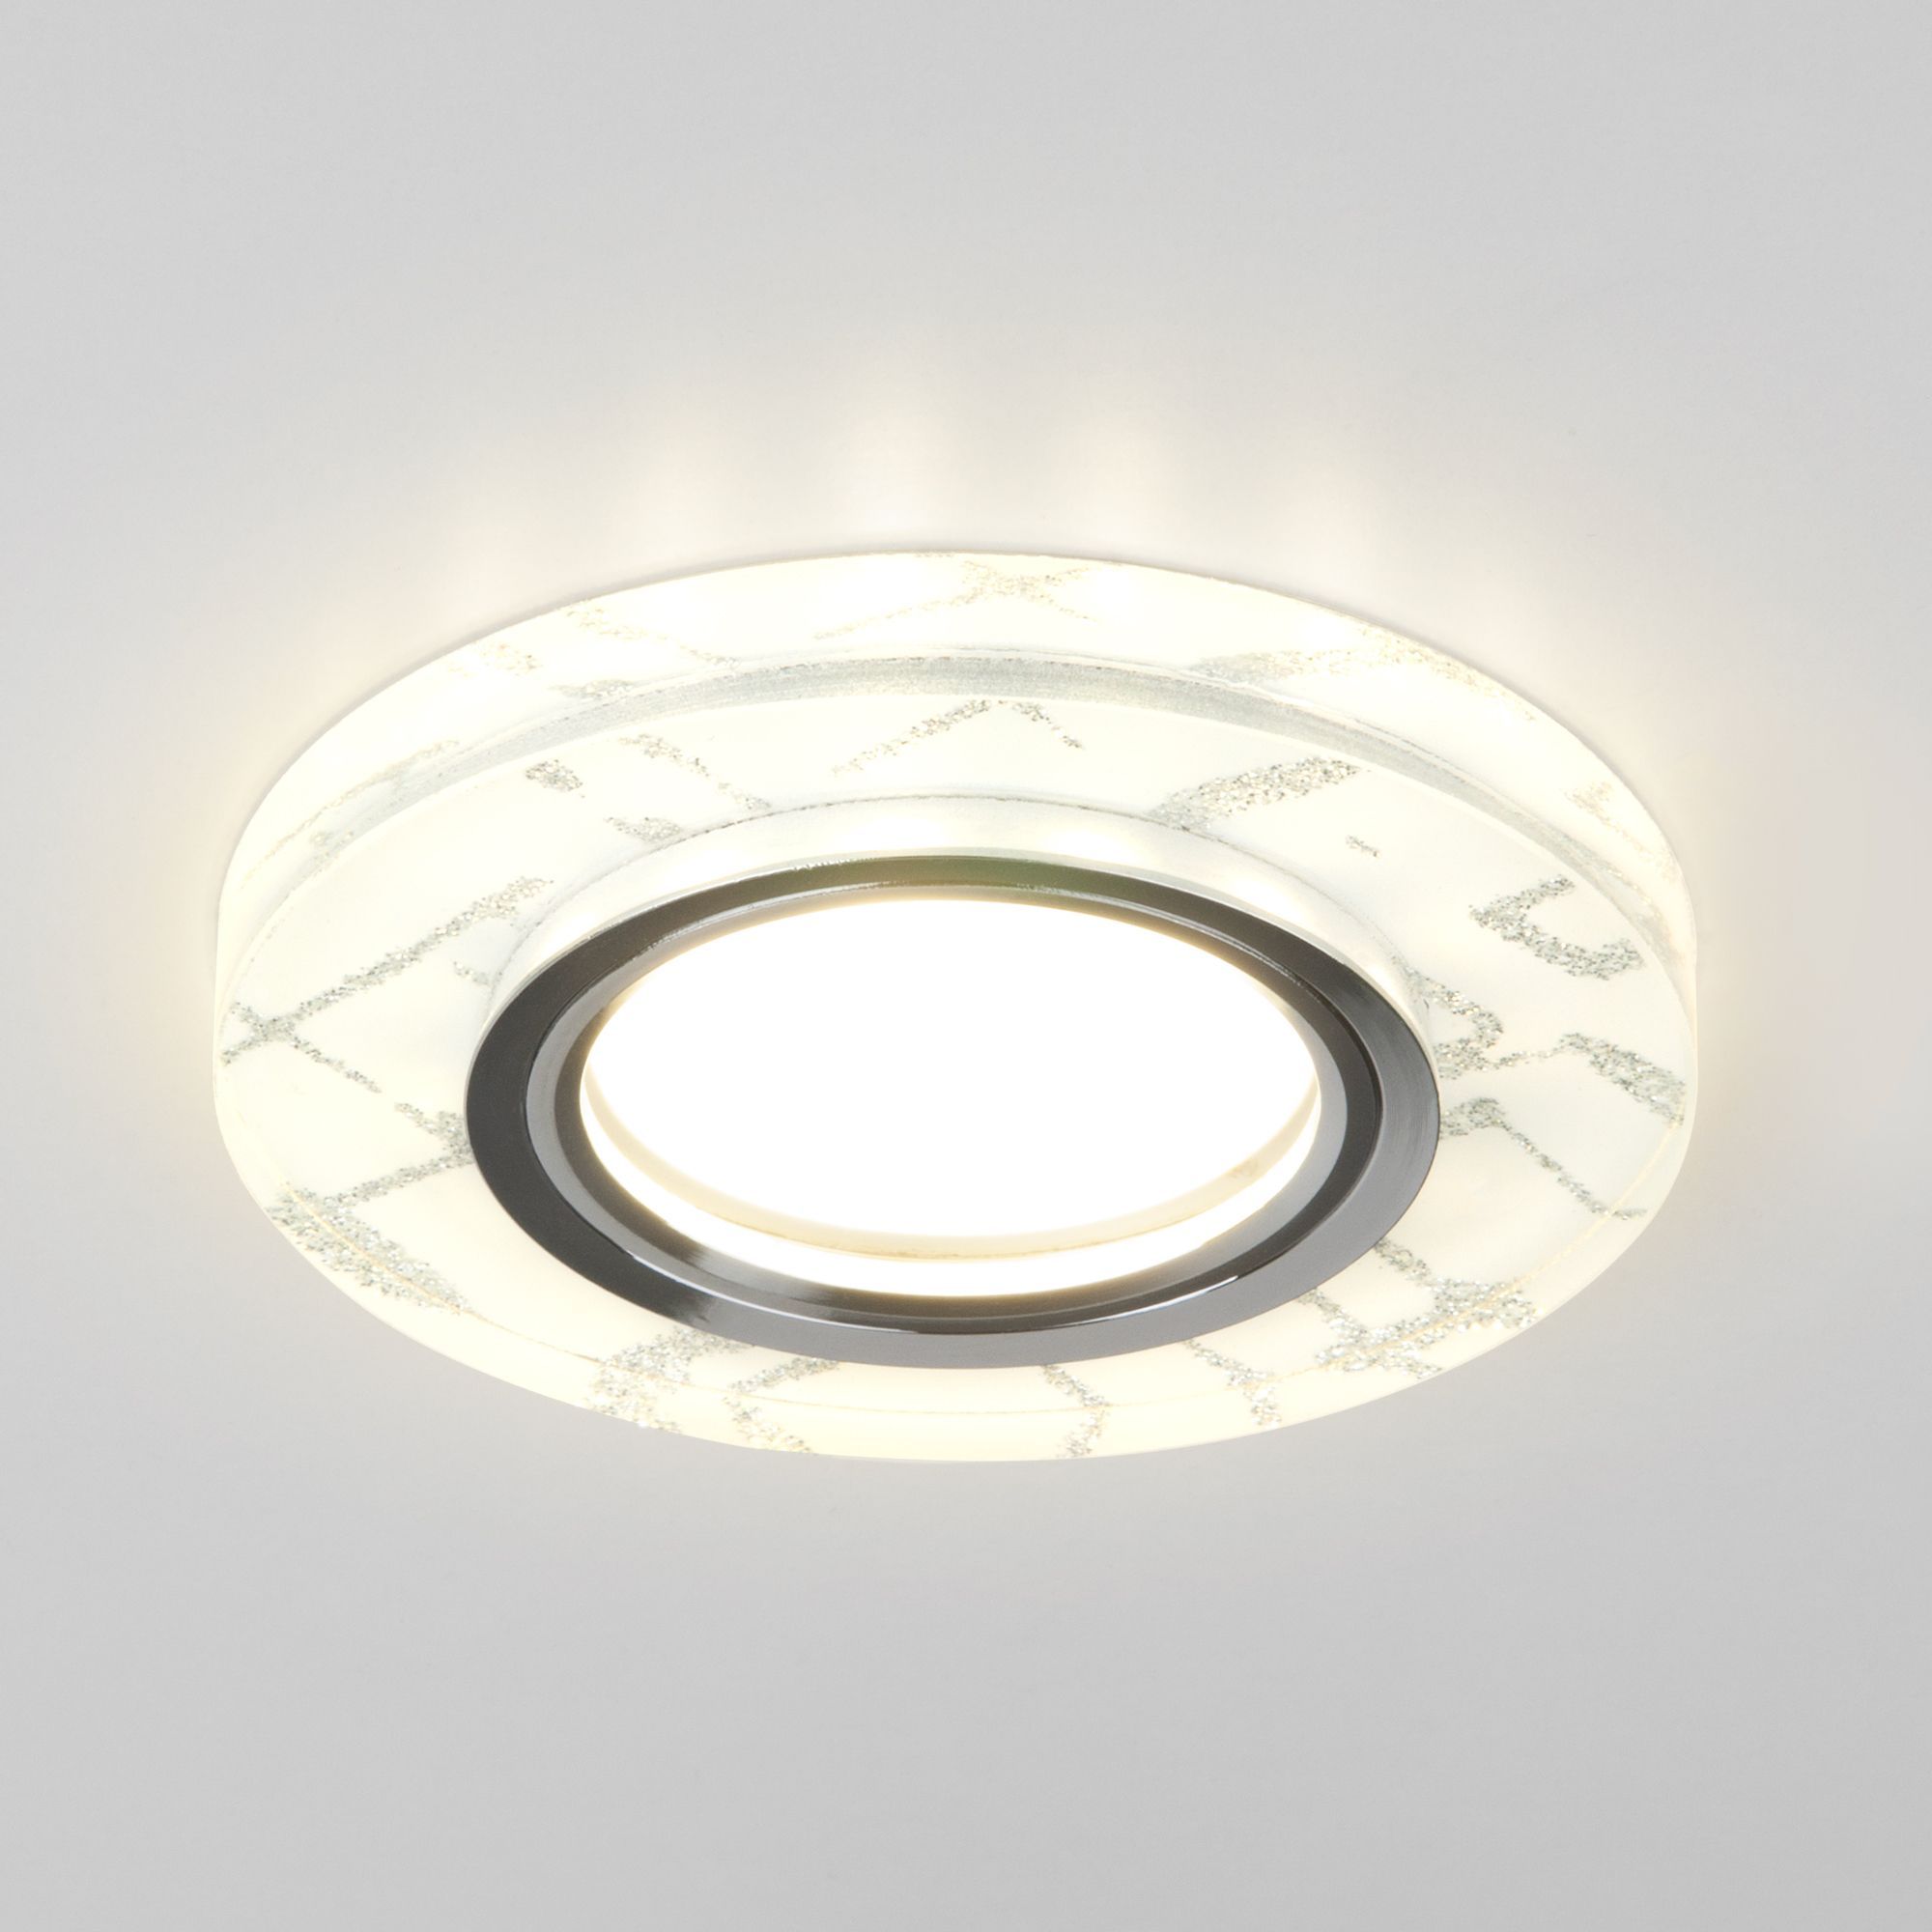 Точечный светильник с LED подсветкой 8371 MR16 WH/SL белый/серебро. Фото 1